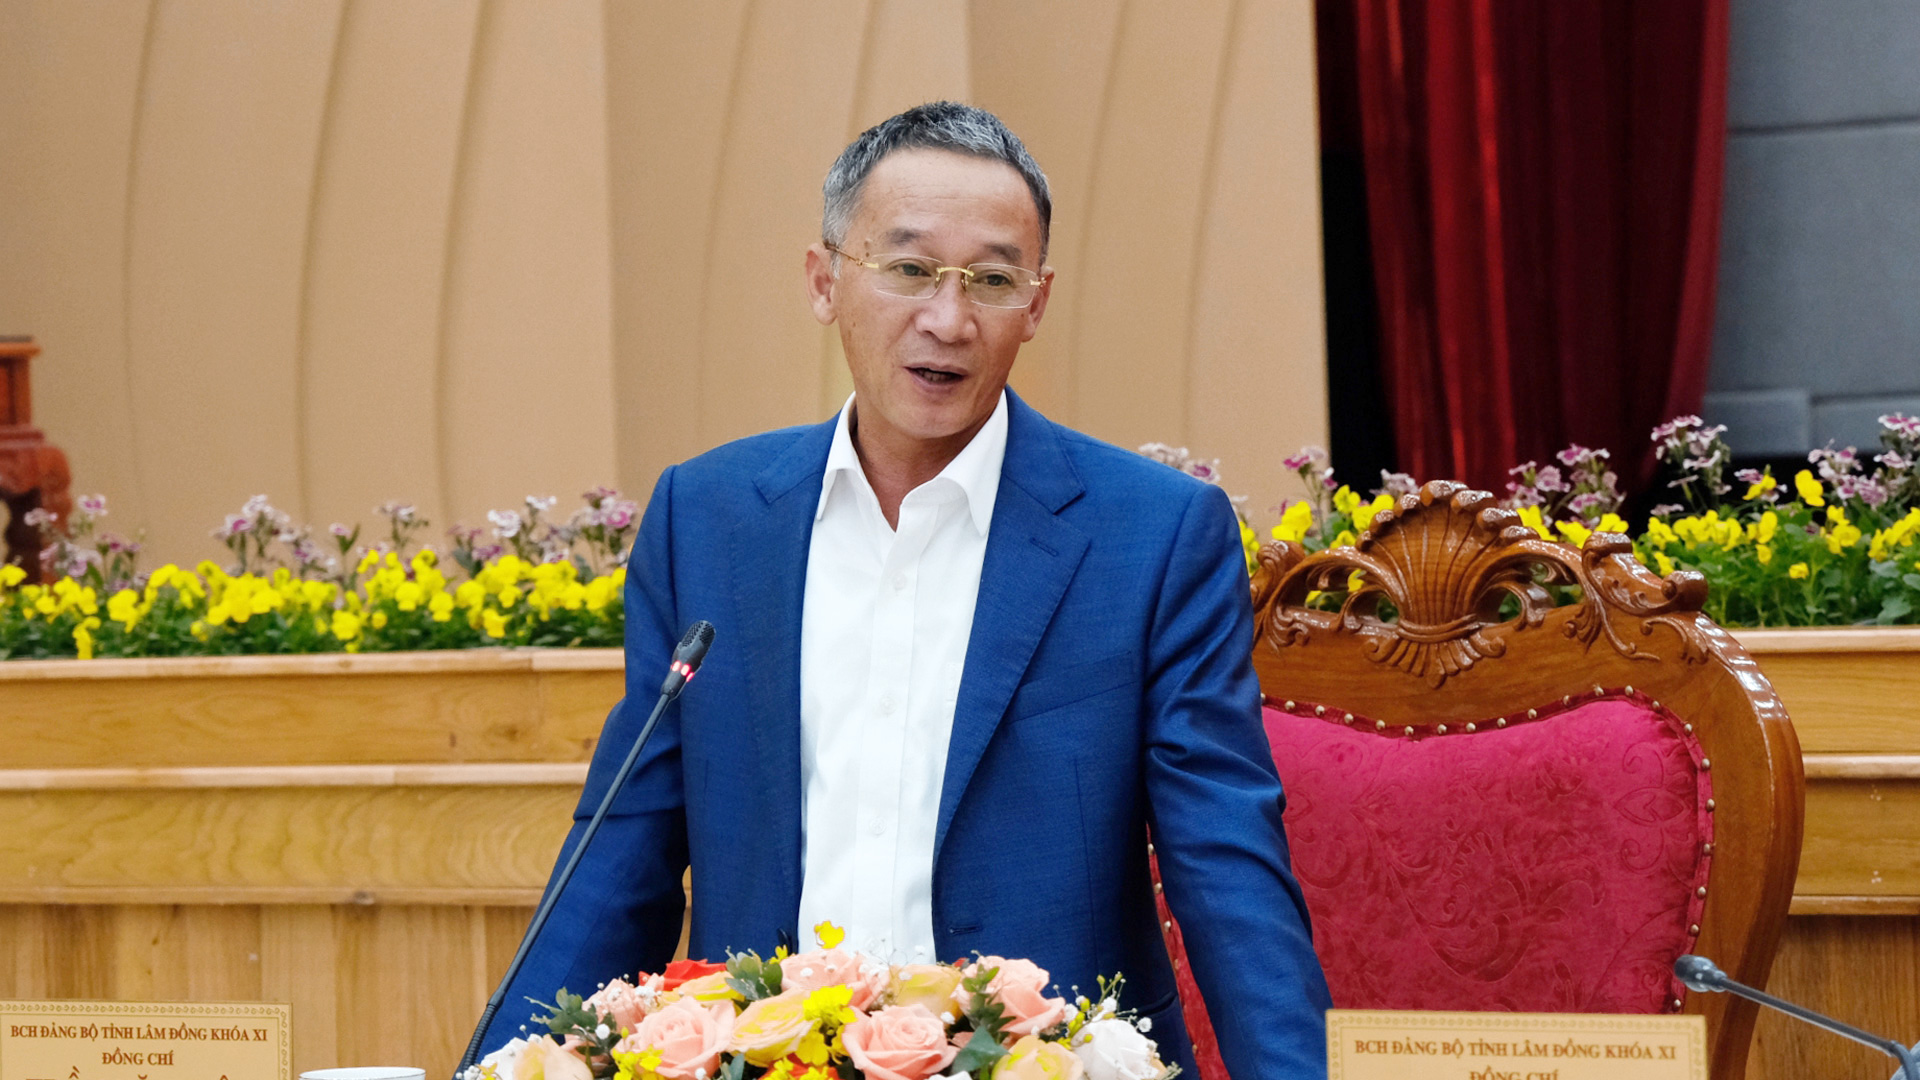 Đồng chí Trần Văn Hiệp - Phó Bí thư Tỉnh ủy, Chủ tịch UBND tỉnh Lâm Đồng phát biểu tại hội nghị